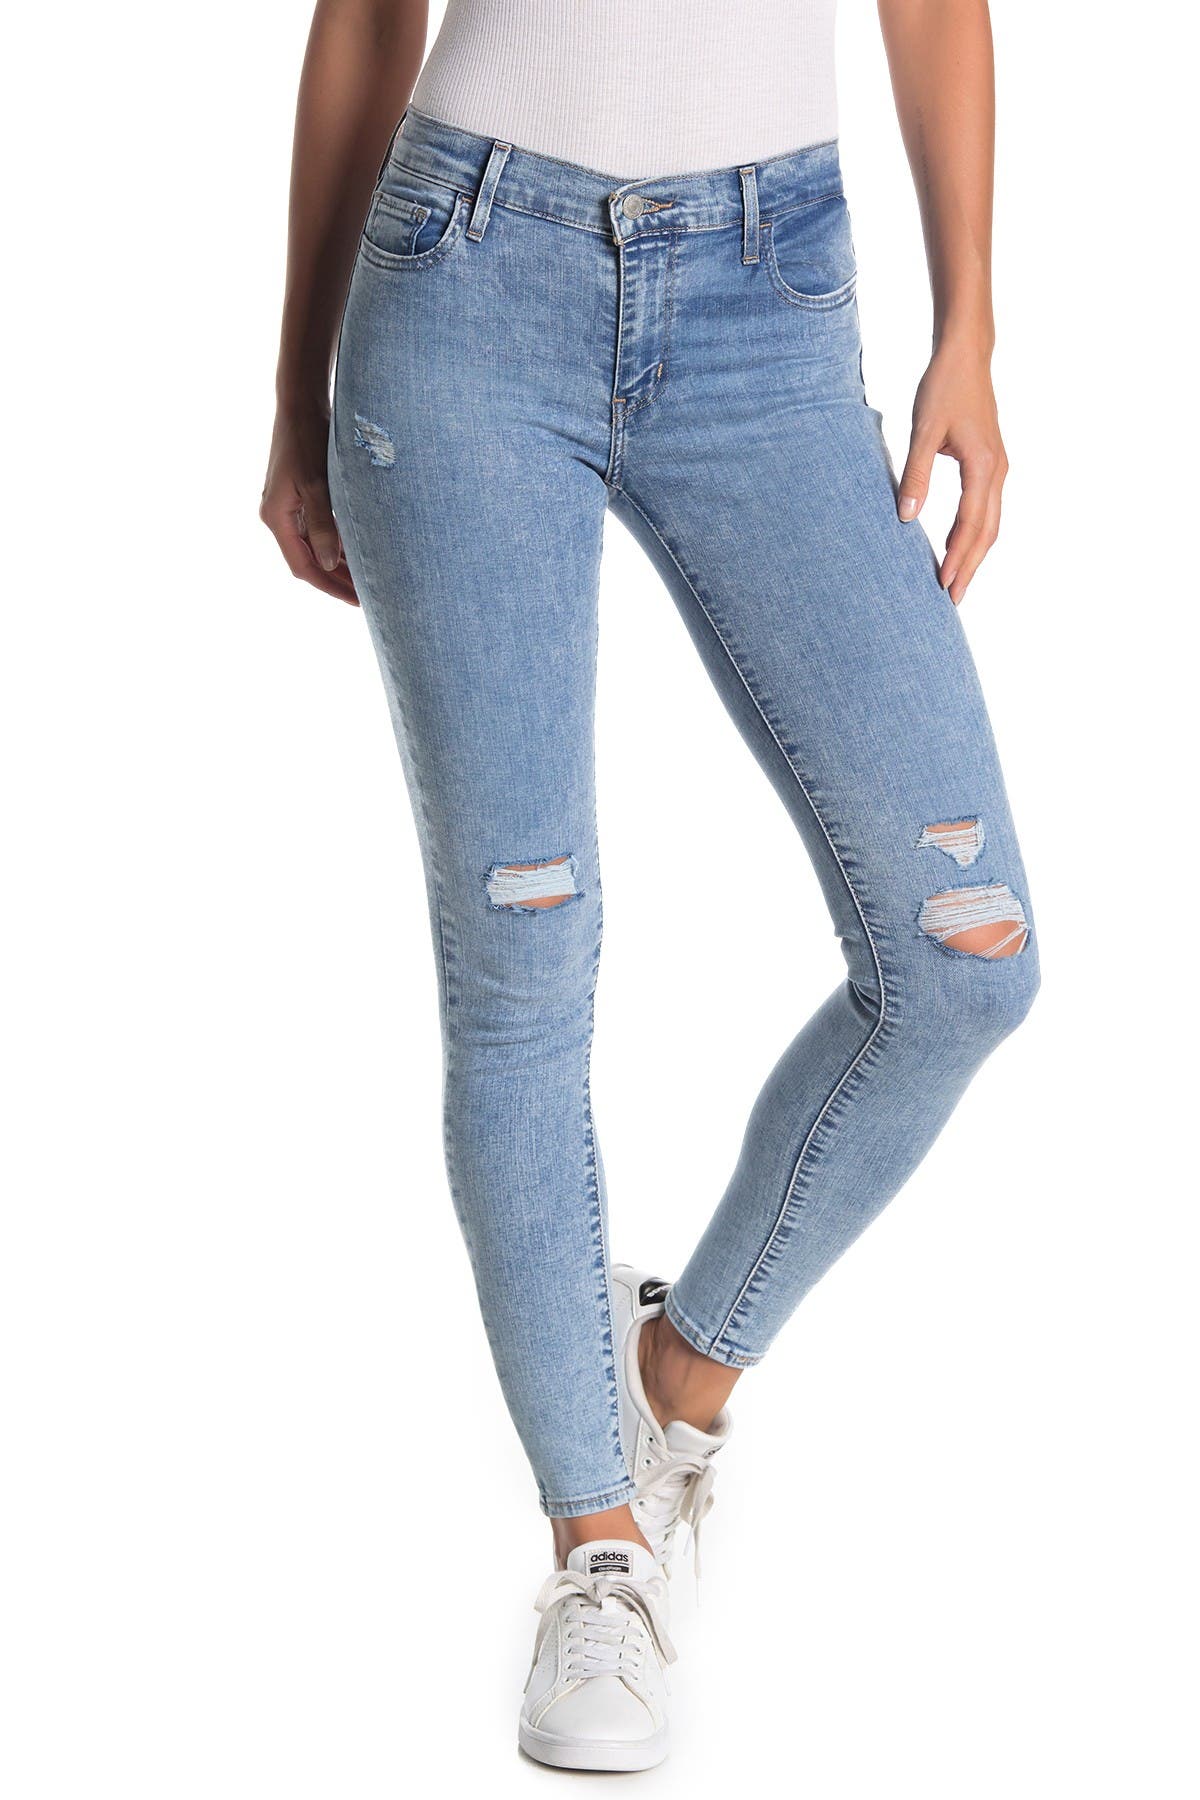 levi jeans 710